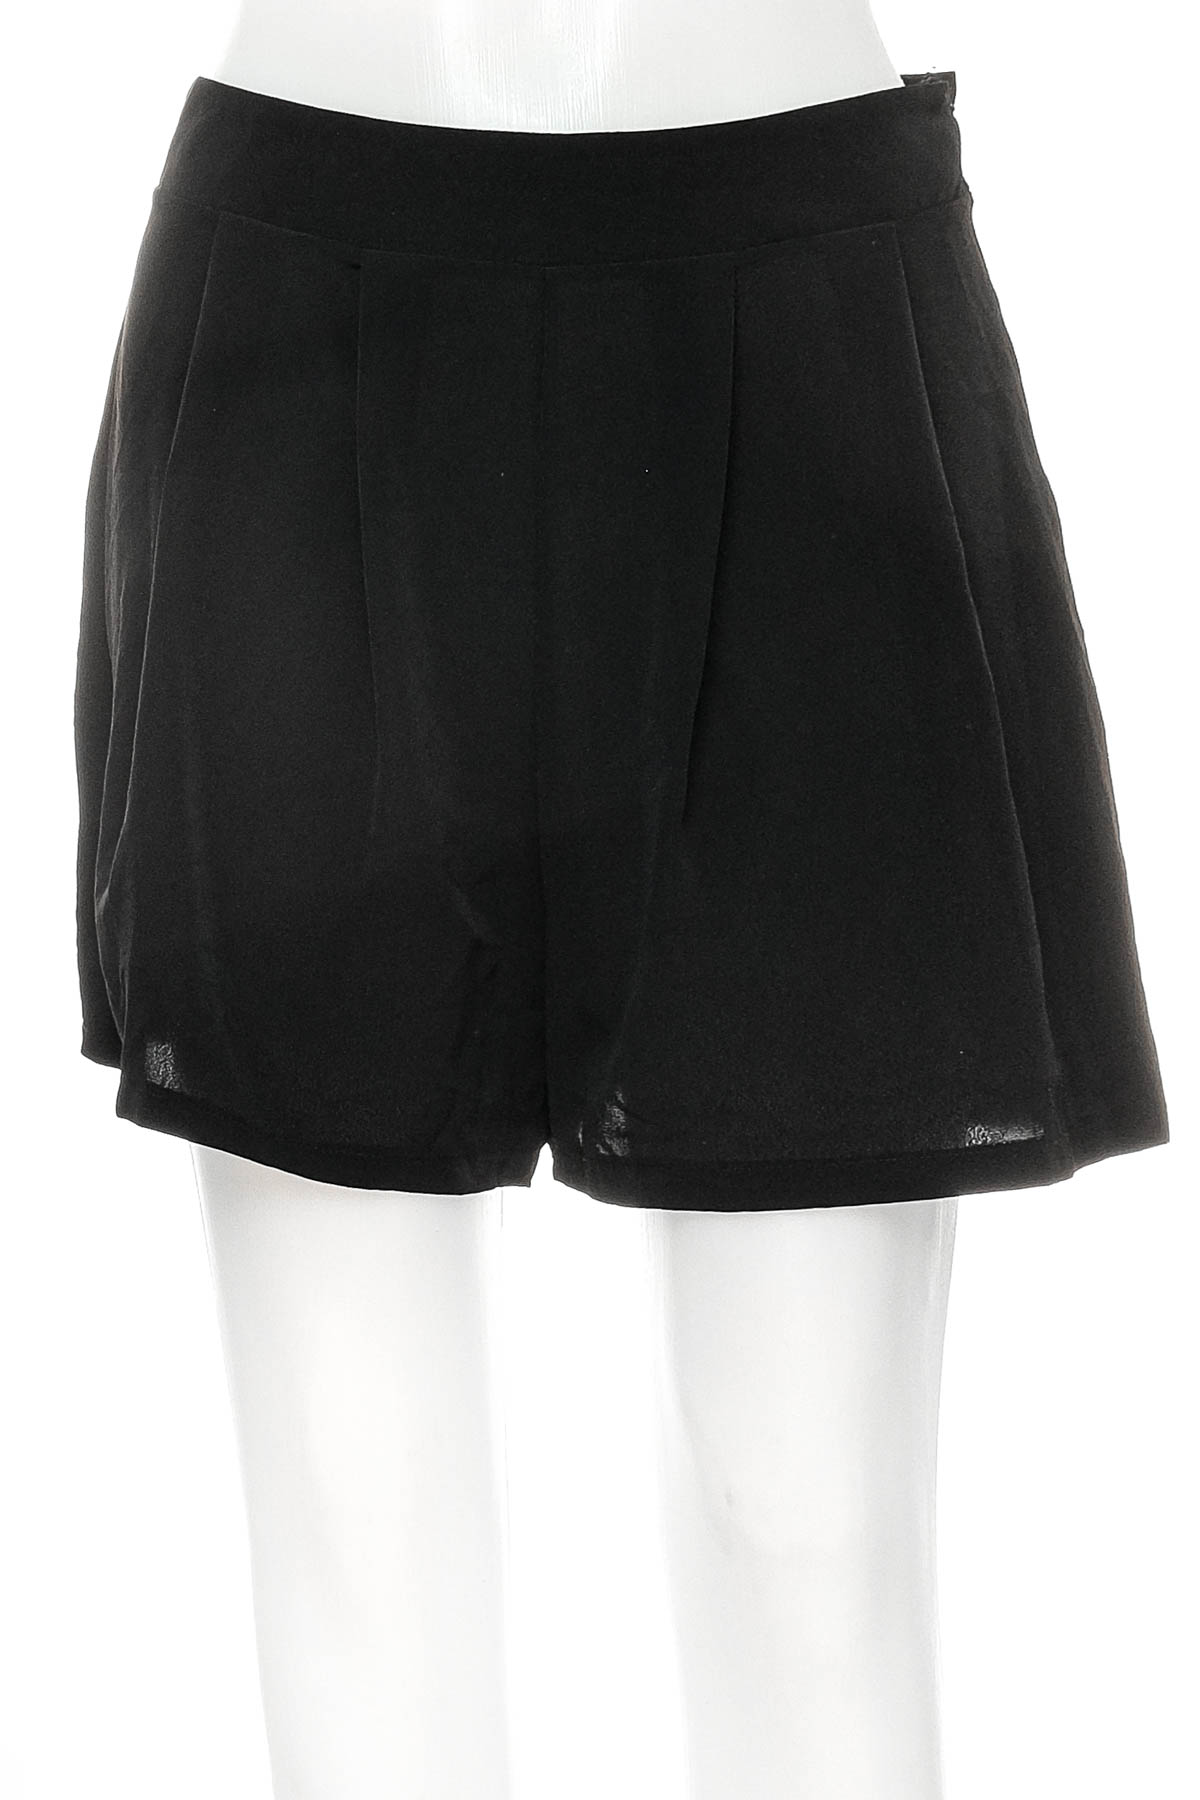 Female shorts - Kiomi - 0